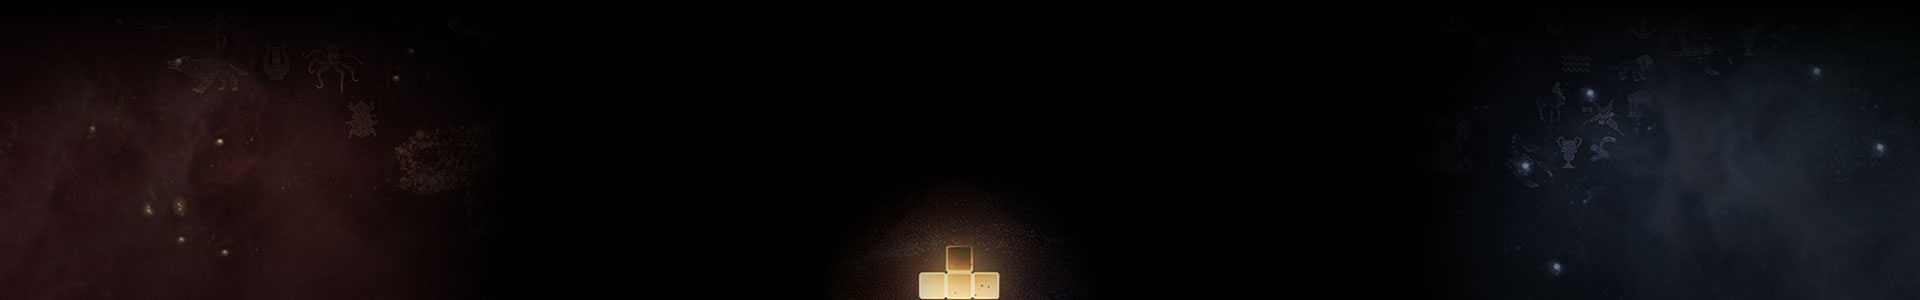 Una pieza brillante de Tetris entre las estrellas.